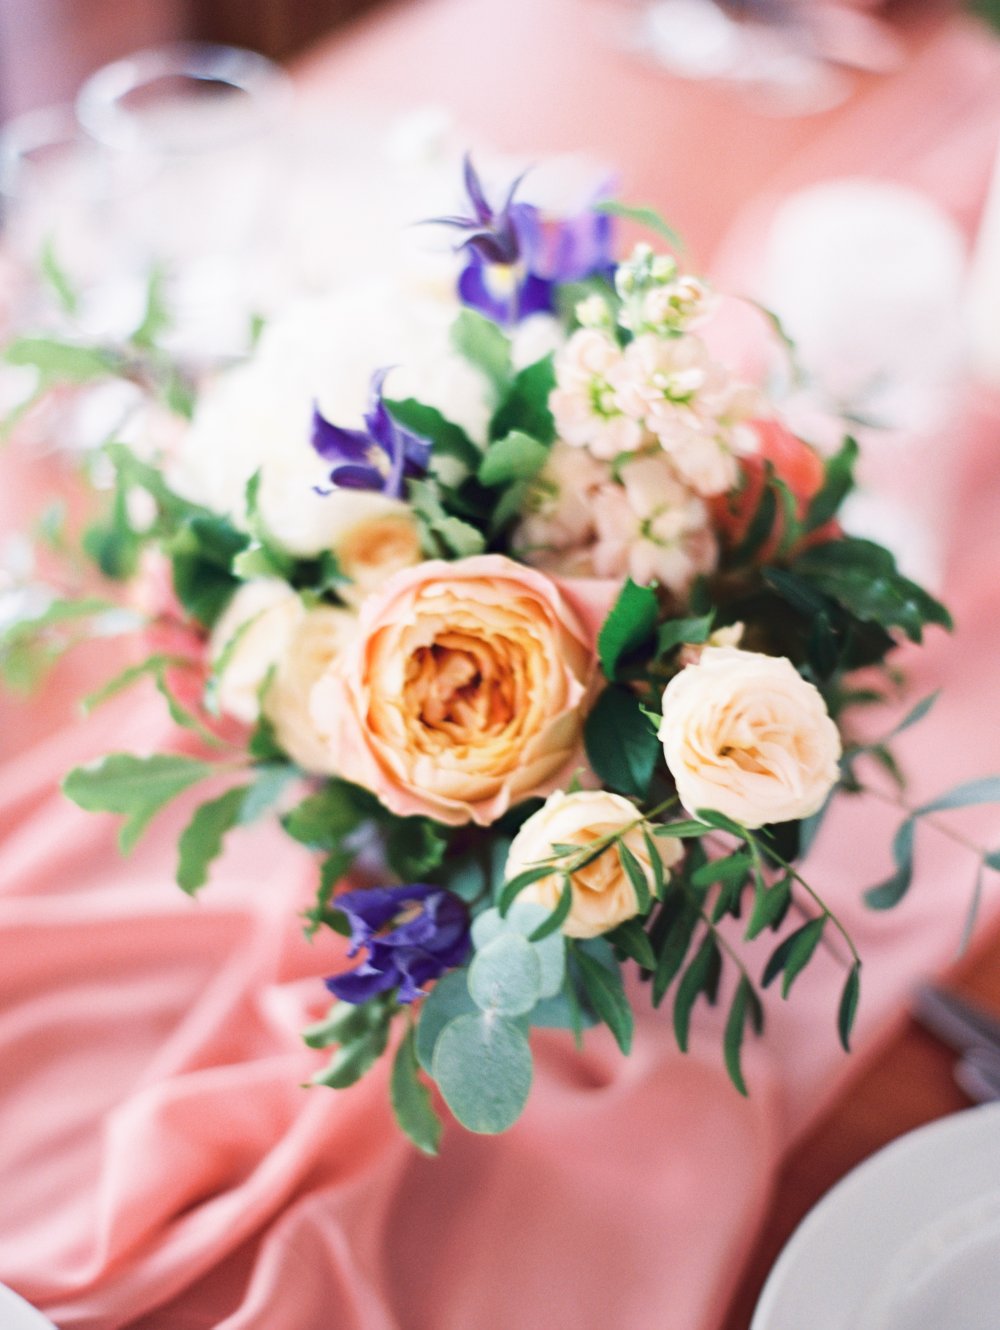 небольшие растрепанные композиции в персиковых и карамельных тонах с фиолетовым акцентом невероятно украсили камерную свадьбу Алины и Ильи